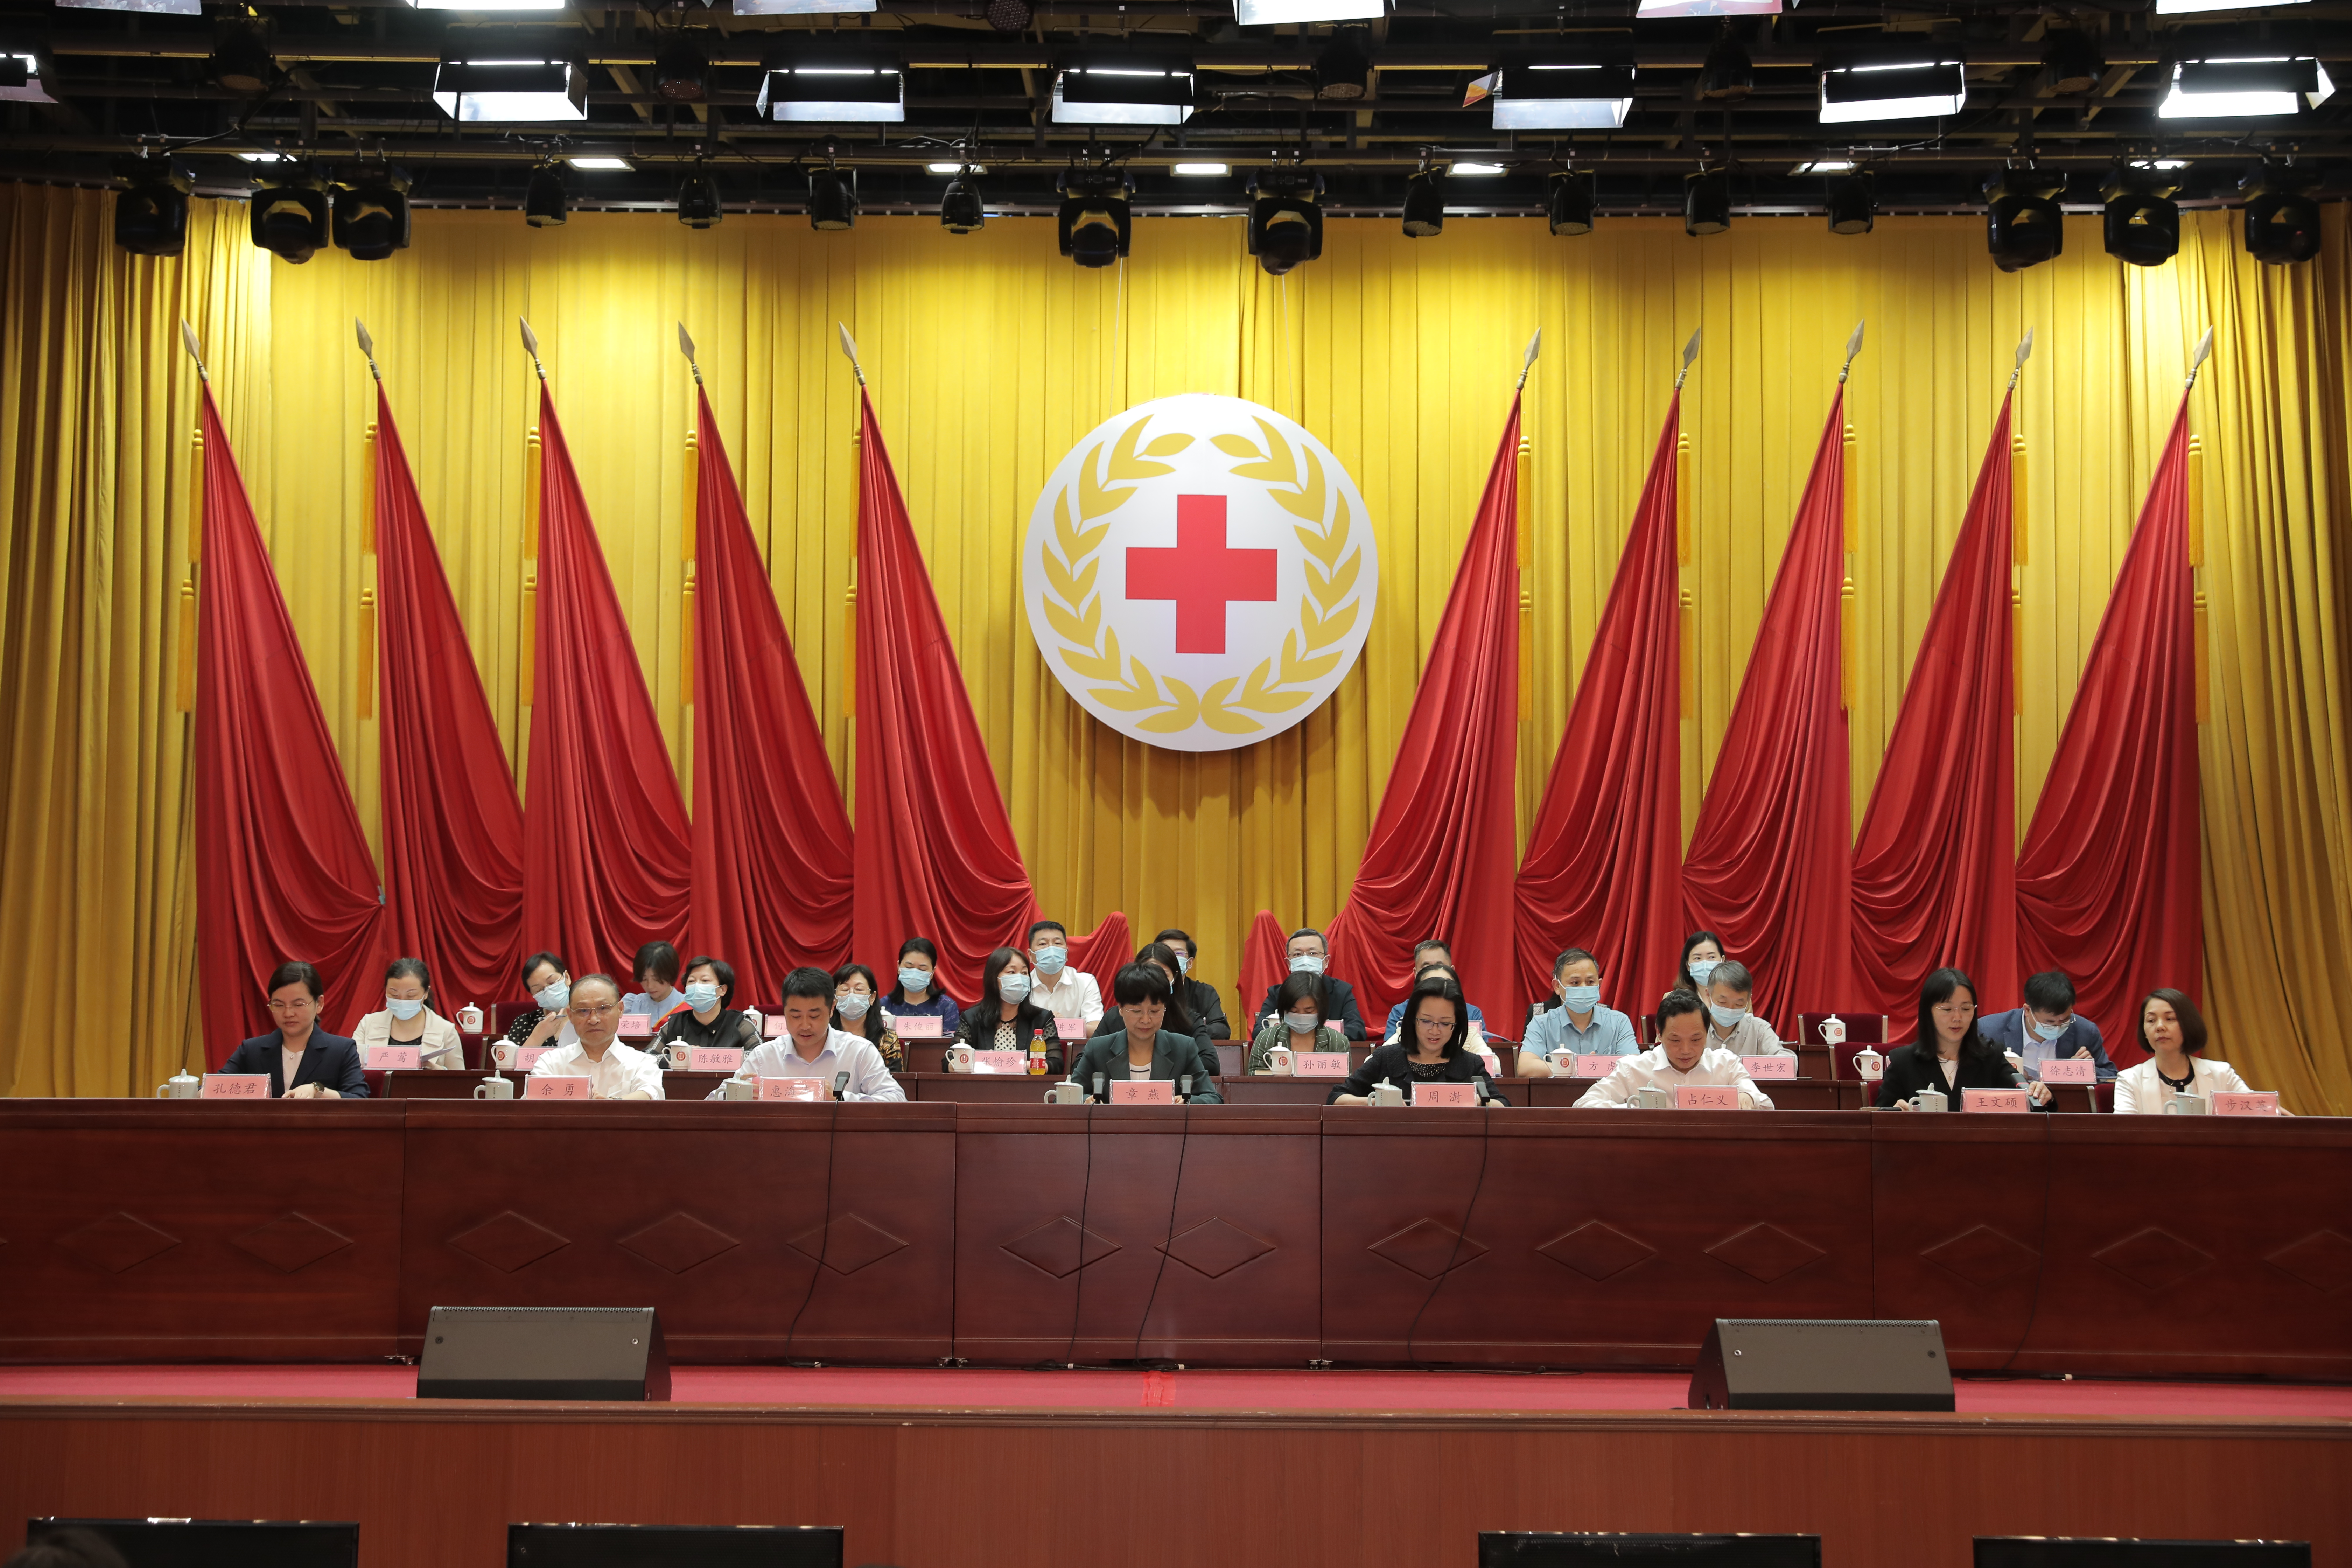 上城区红十字会顺利召开第一次会员代表大会